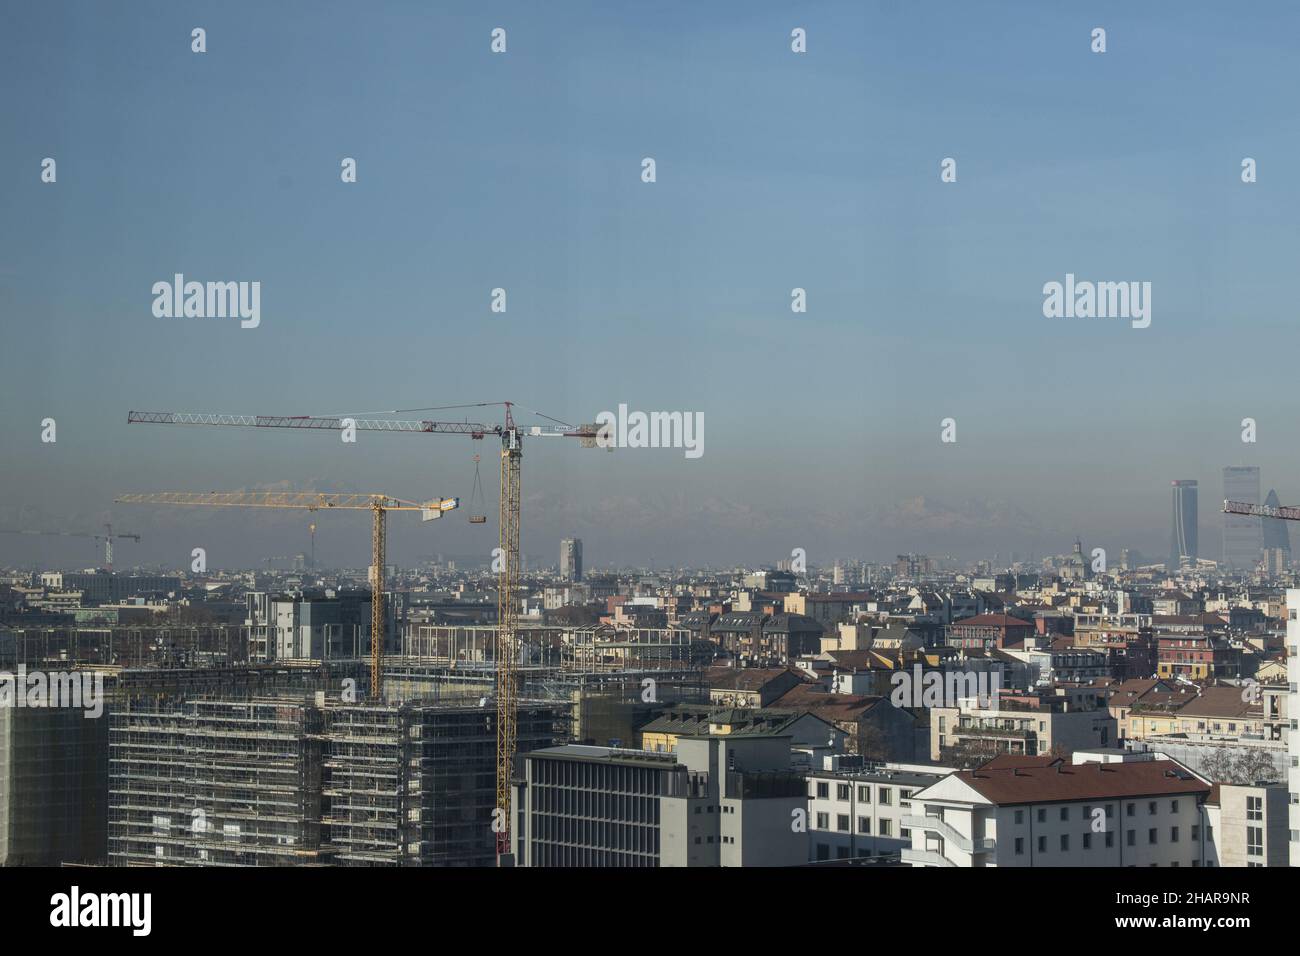 Mailand, Italien: Die Skyline der Stadt von den Fenstern des Turms der Fondazione Prada aus gesehen, das 60 Meter hohe Gebäude, das von Rem Koolhaas entworfen wurde Stockfoto